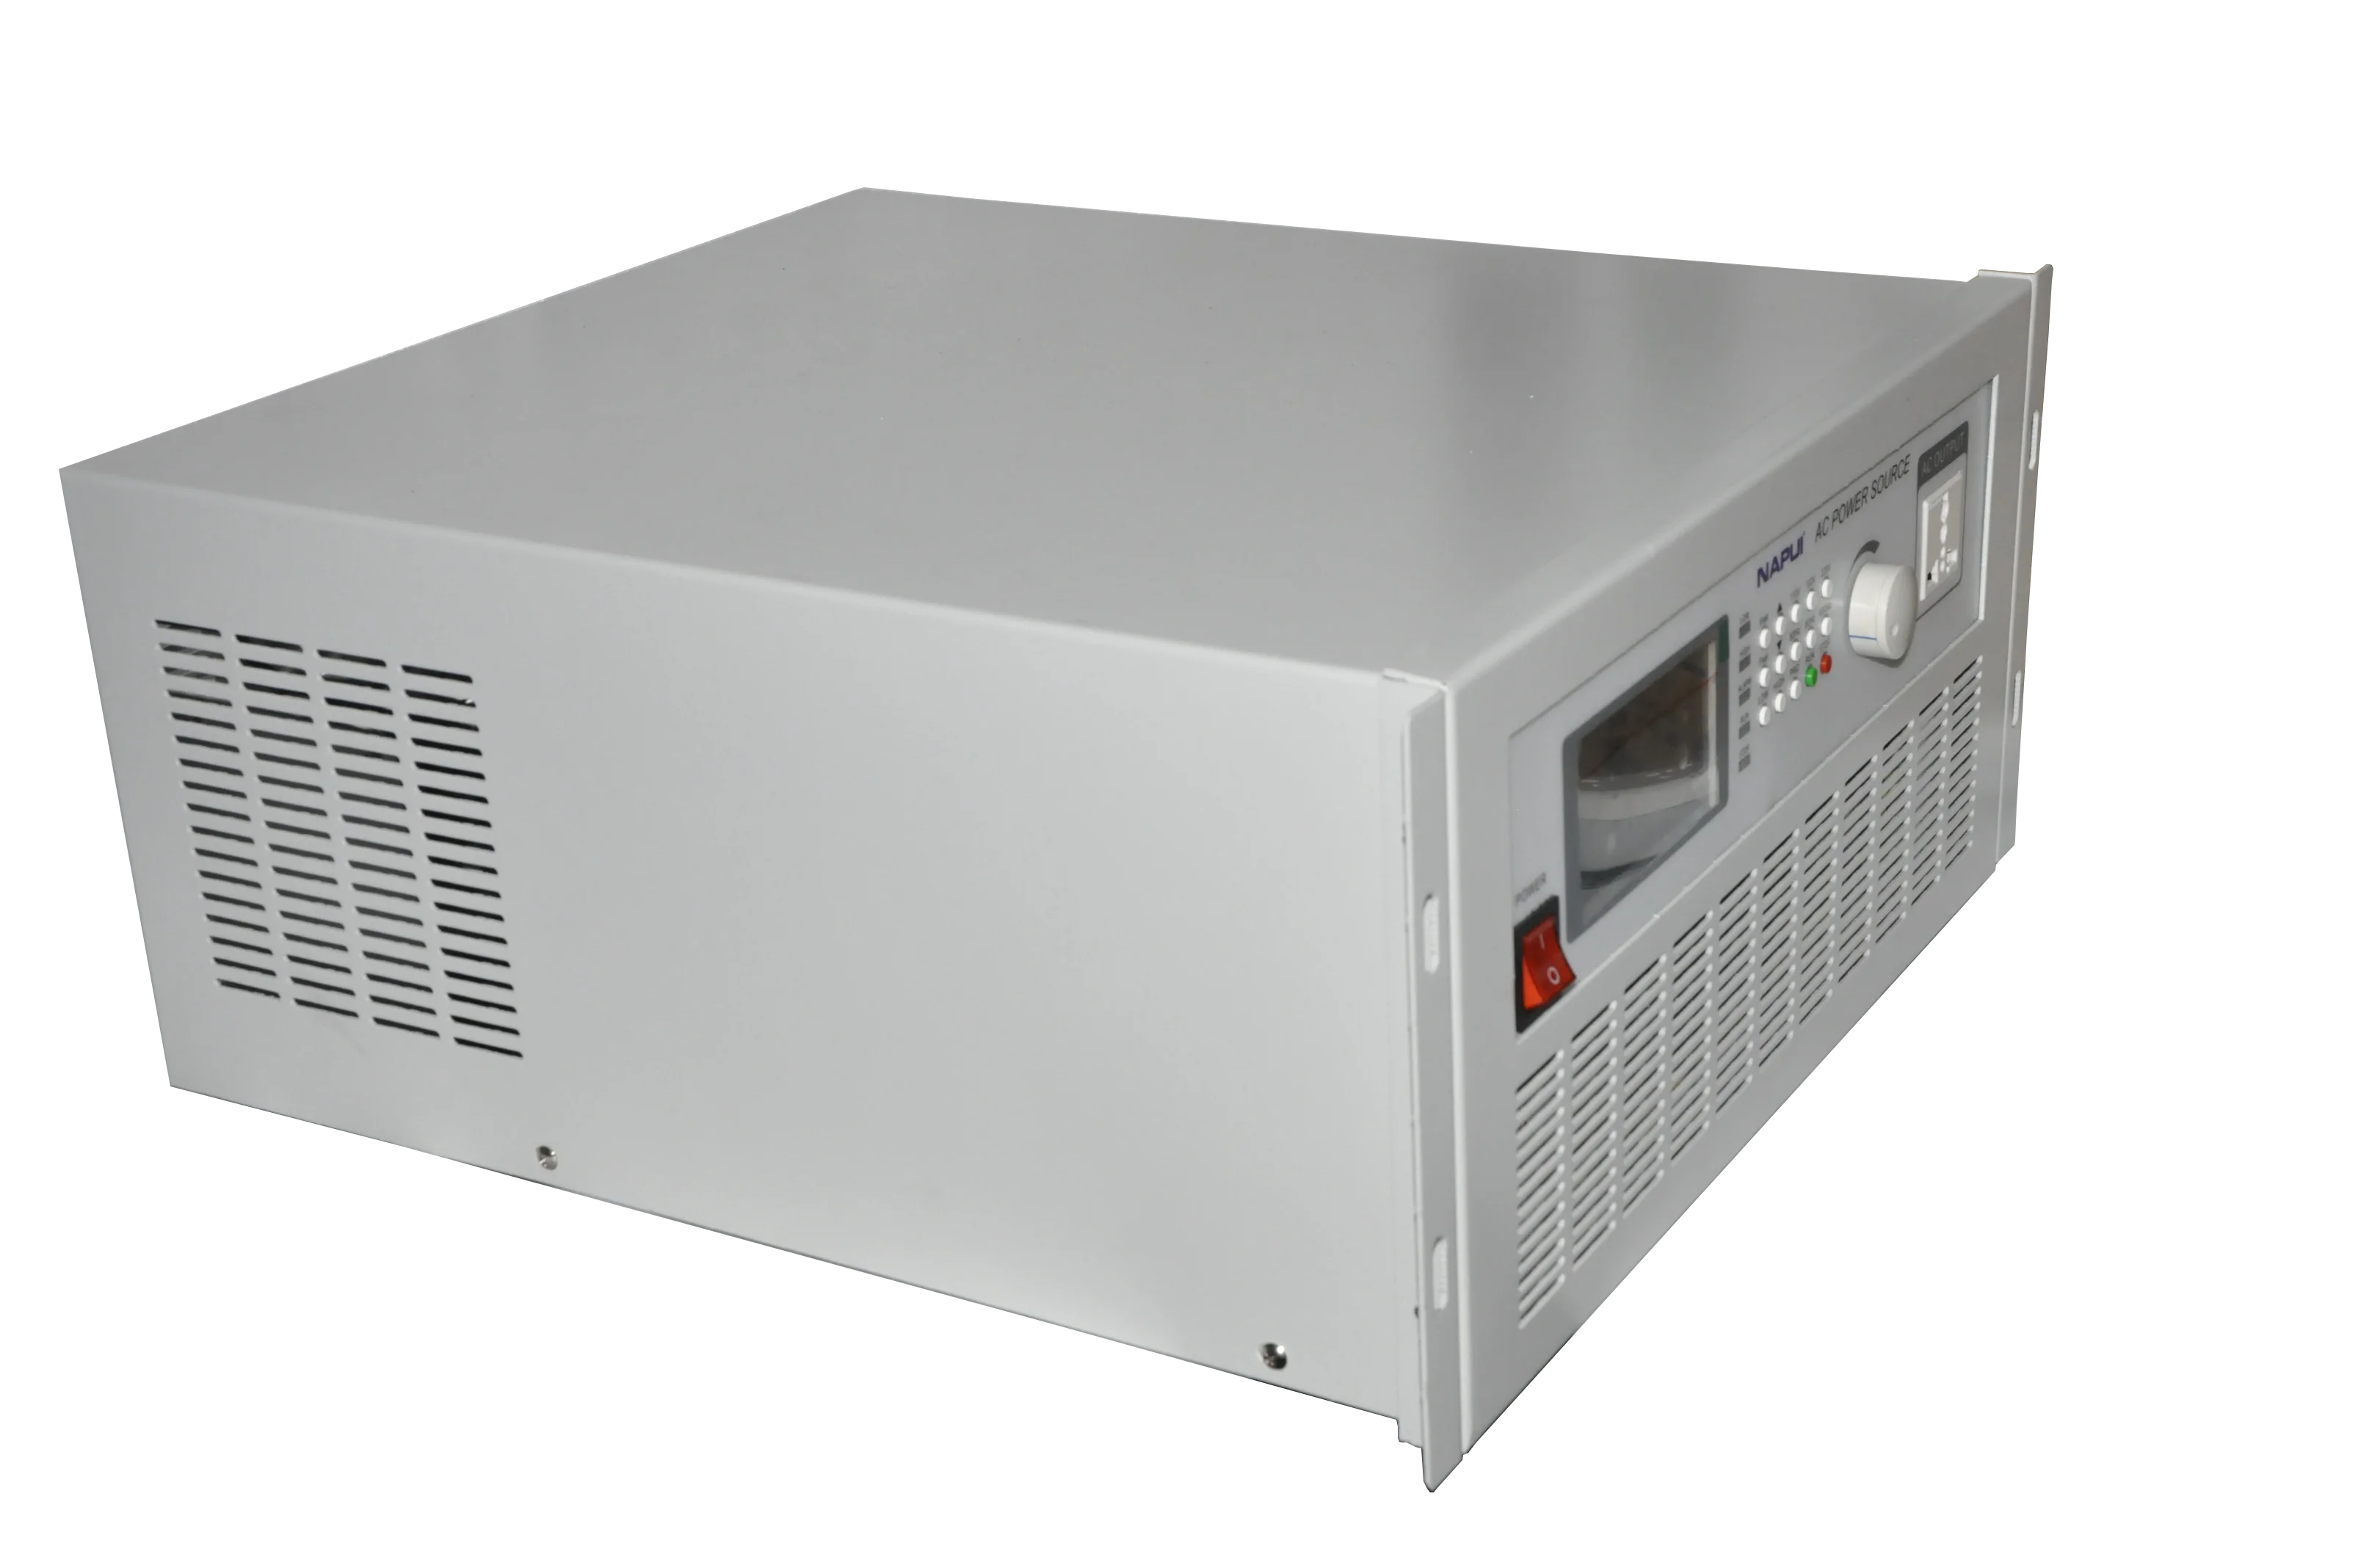 Источник питания переменного тока PA9505, 0-300 В, 0-500 Вт, программный контроль, источник питания переменного тока с переменной частотой